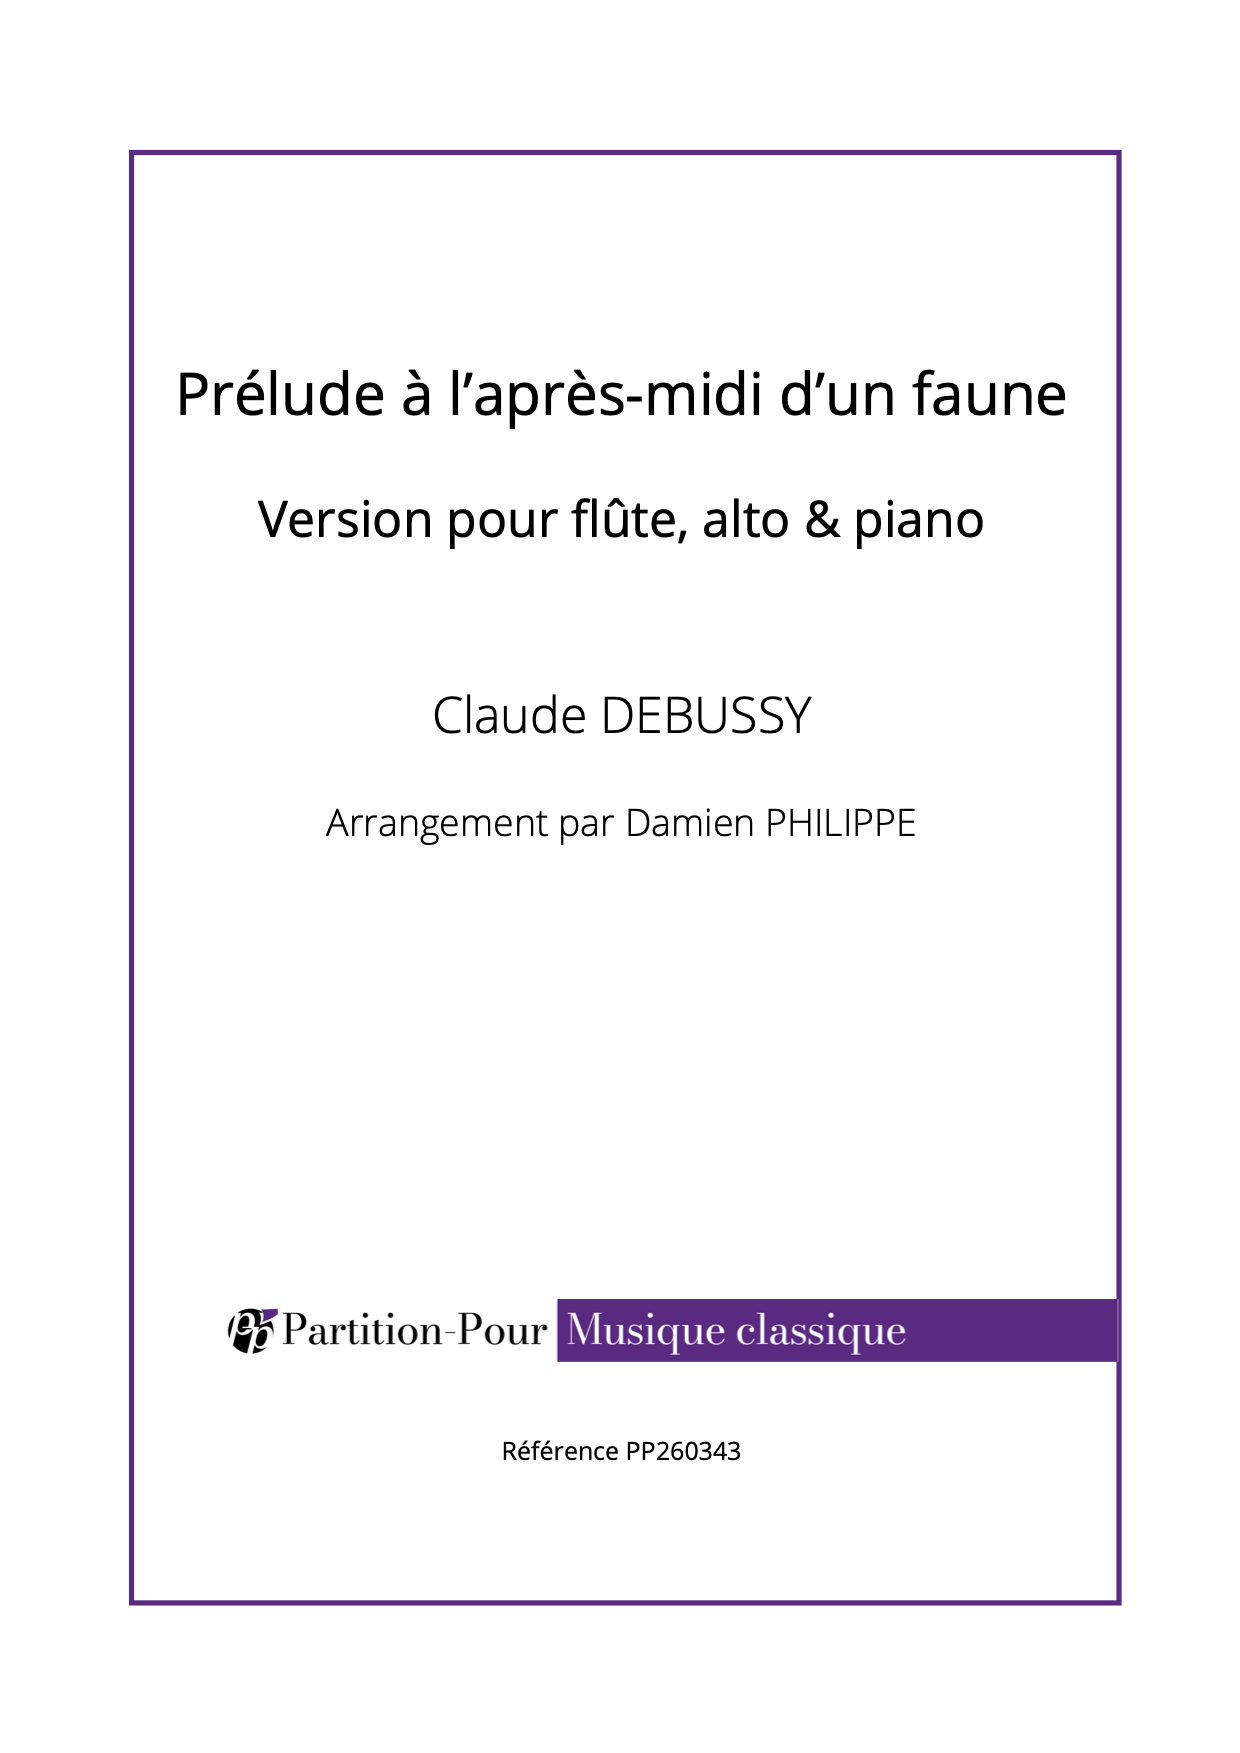 PP260343 - Debussy C - Prélude à l'après-midi d'un faune - flûte, alto & piano -présentation